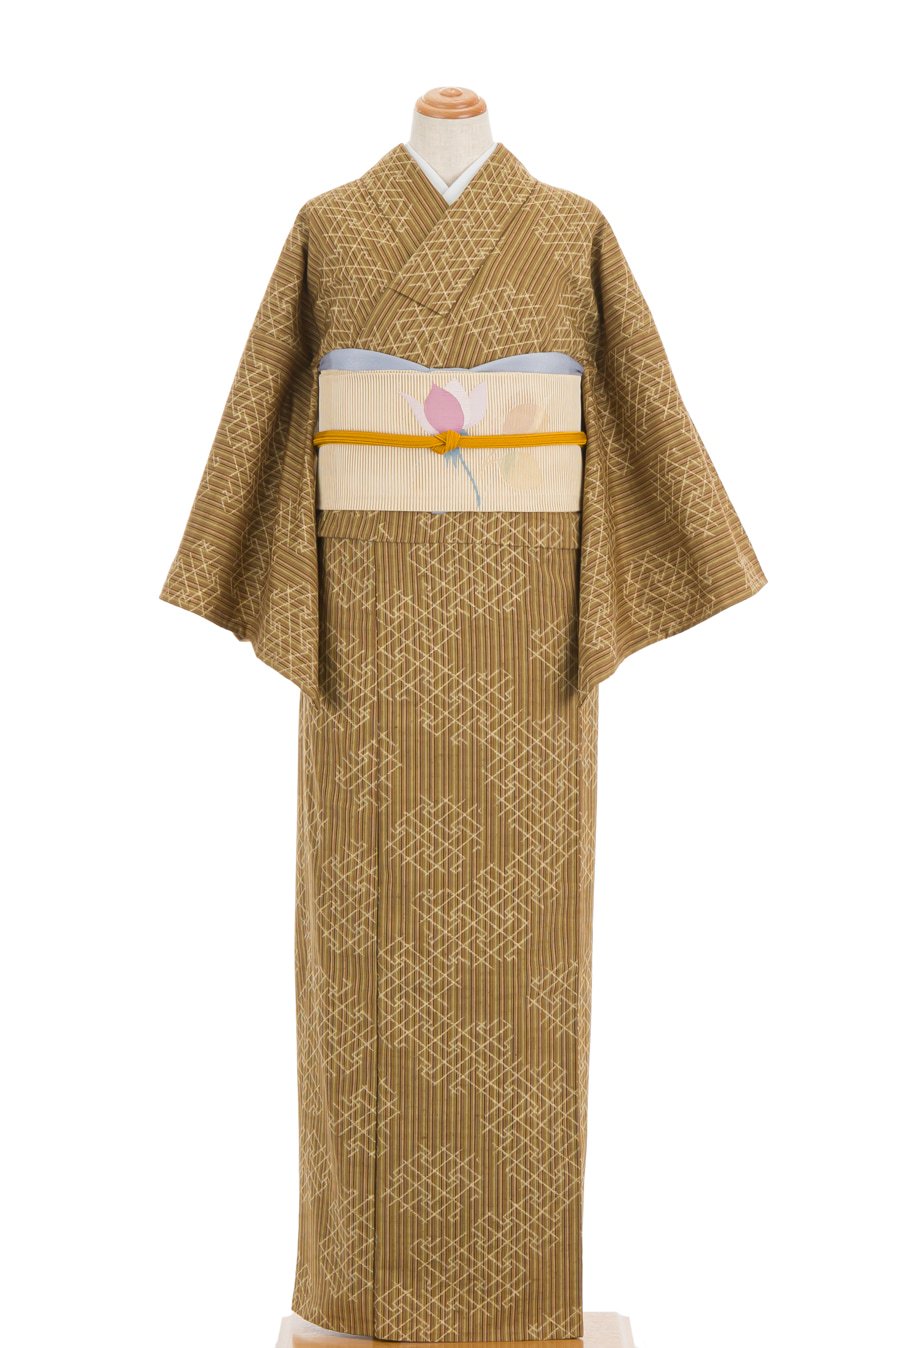 単衣 紬 細縞に紗綾型 からん::アンティーク着物・リサイクル着物の通販サイト